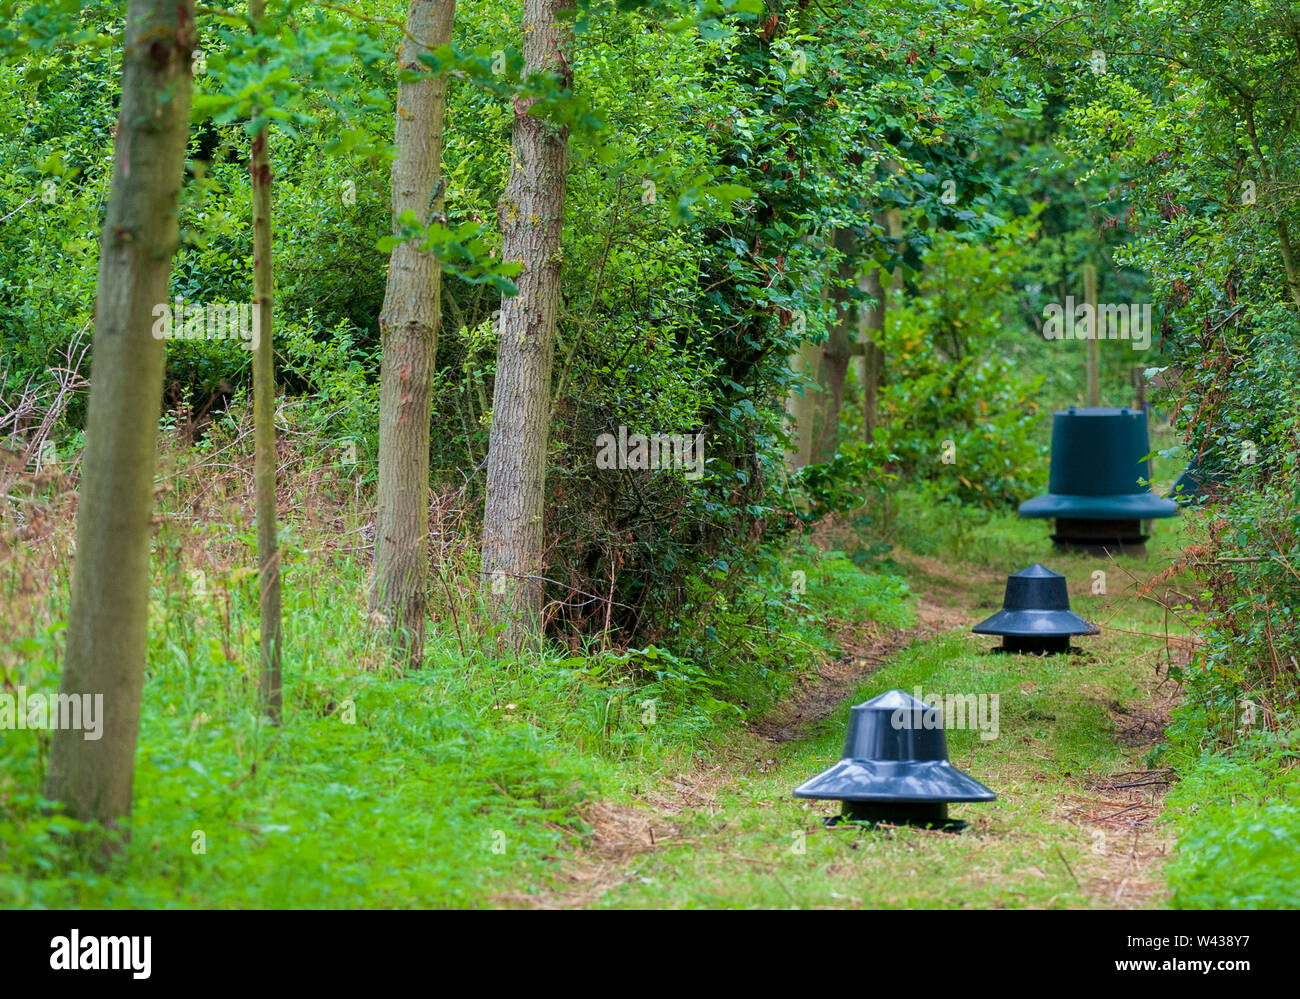 Zuführungen für Fasane, Rebhühner und federwild von einem wildhüter verwendet saß in einer Fütterung Reiten im Wald auf einem traditionellen Immobilien schießen in England Stockfoto